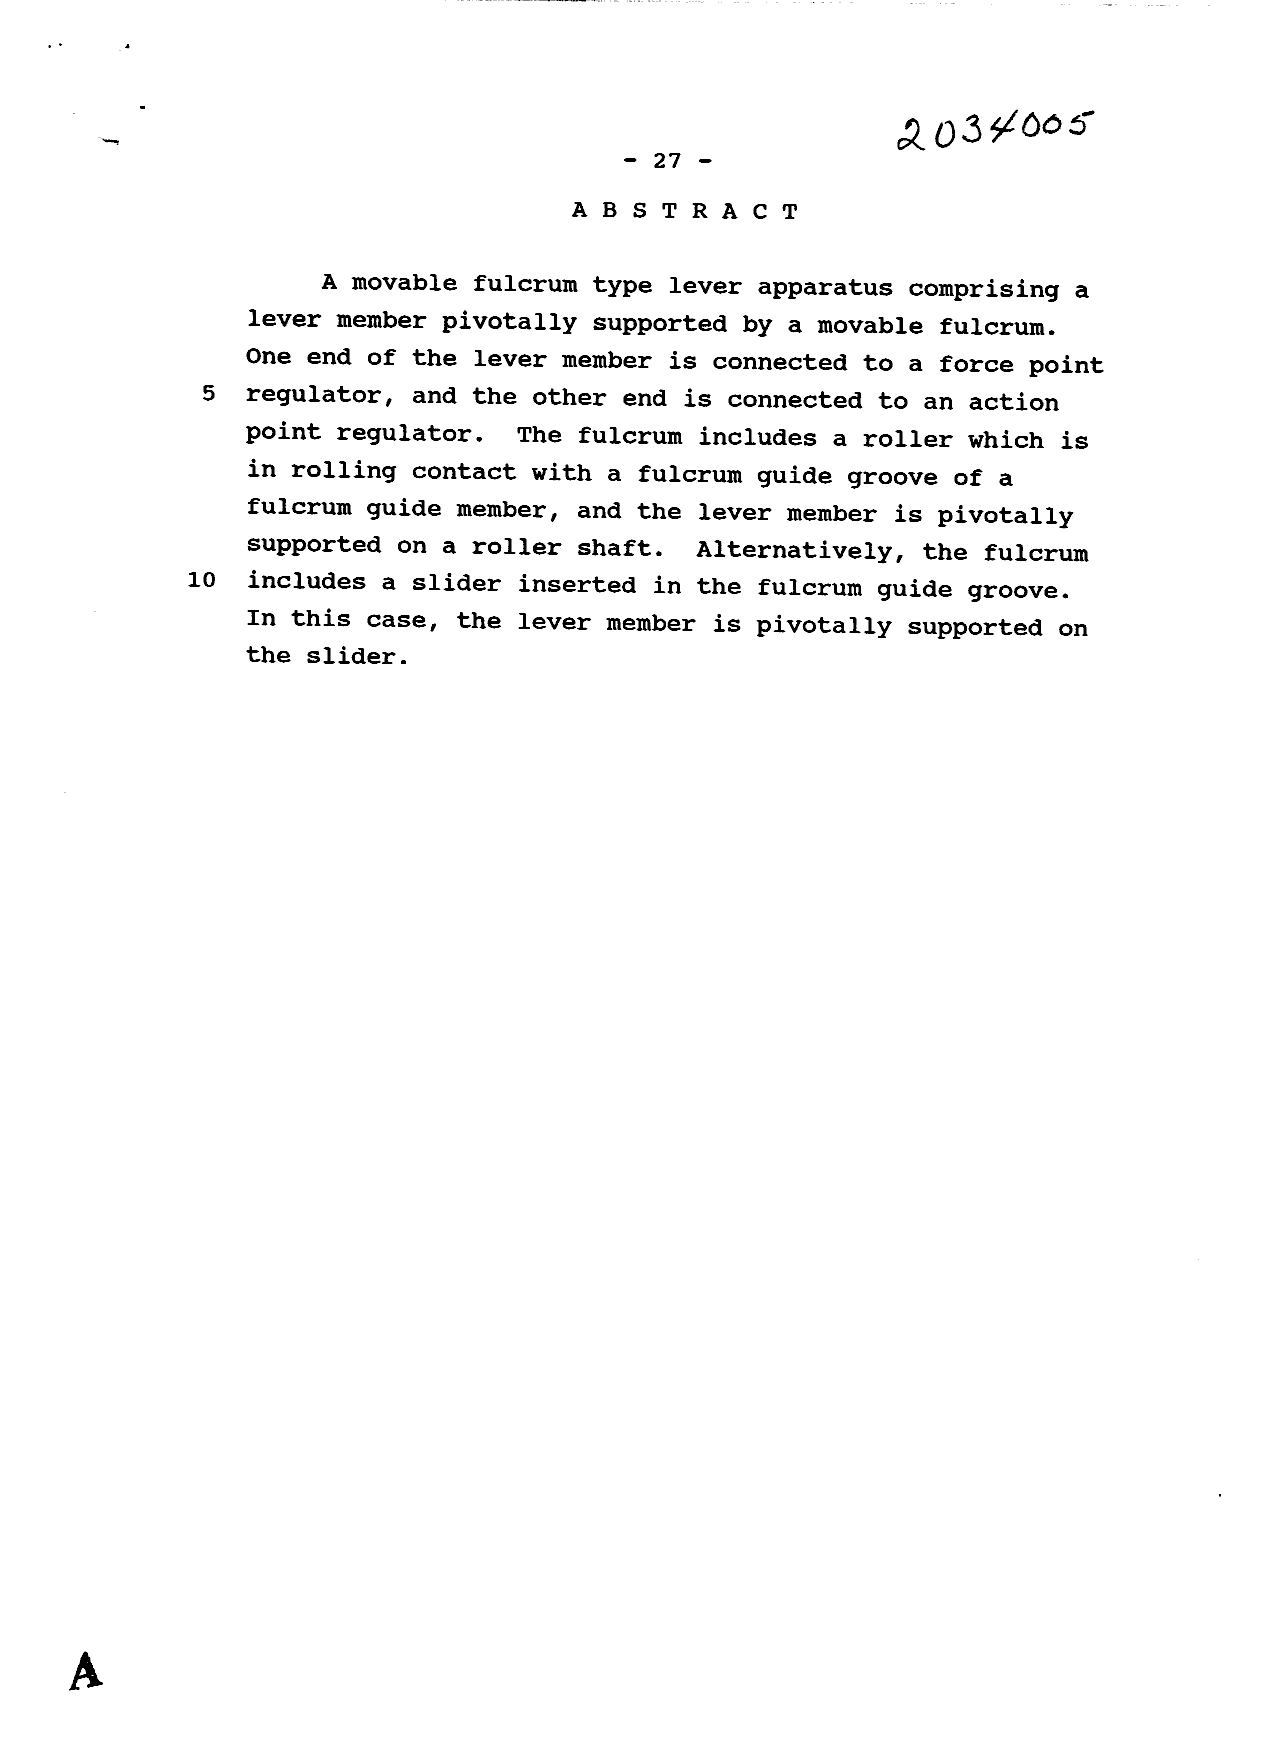 Document de brevet canadien 2034005. Abrégé 19940712. Image 1 de 1